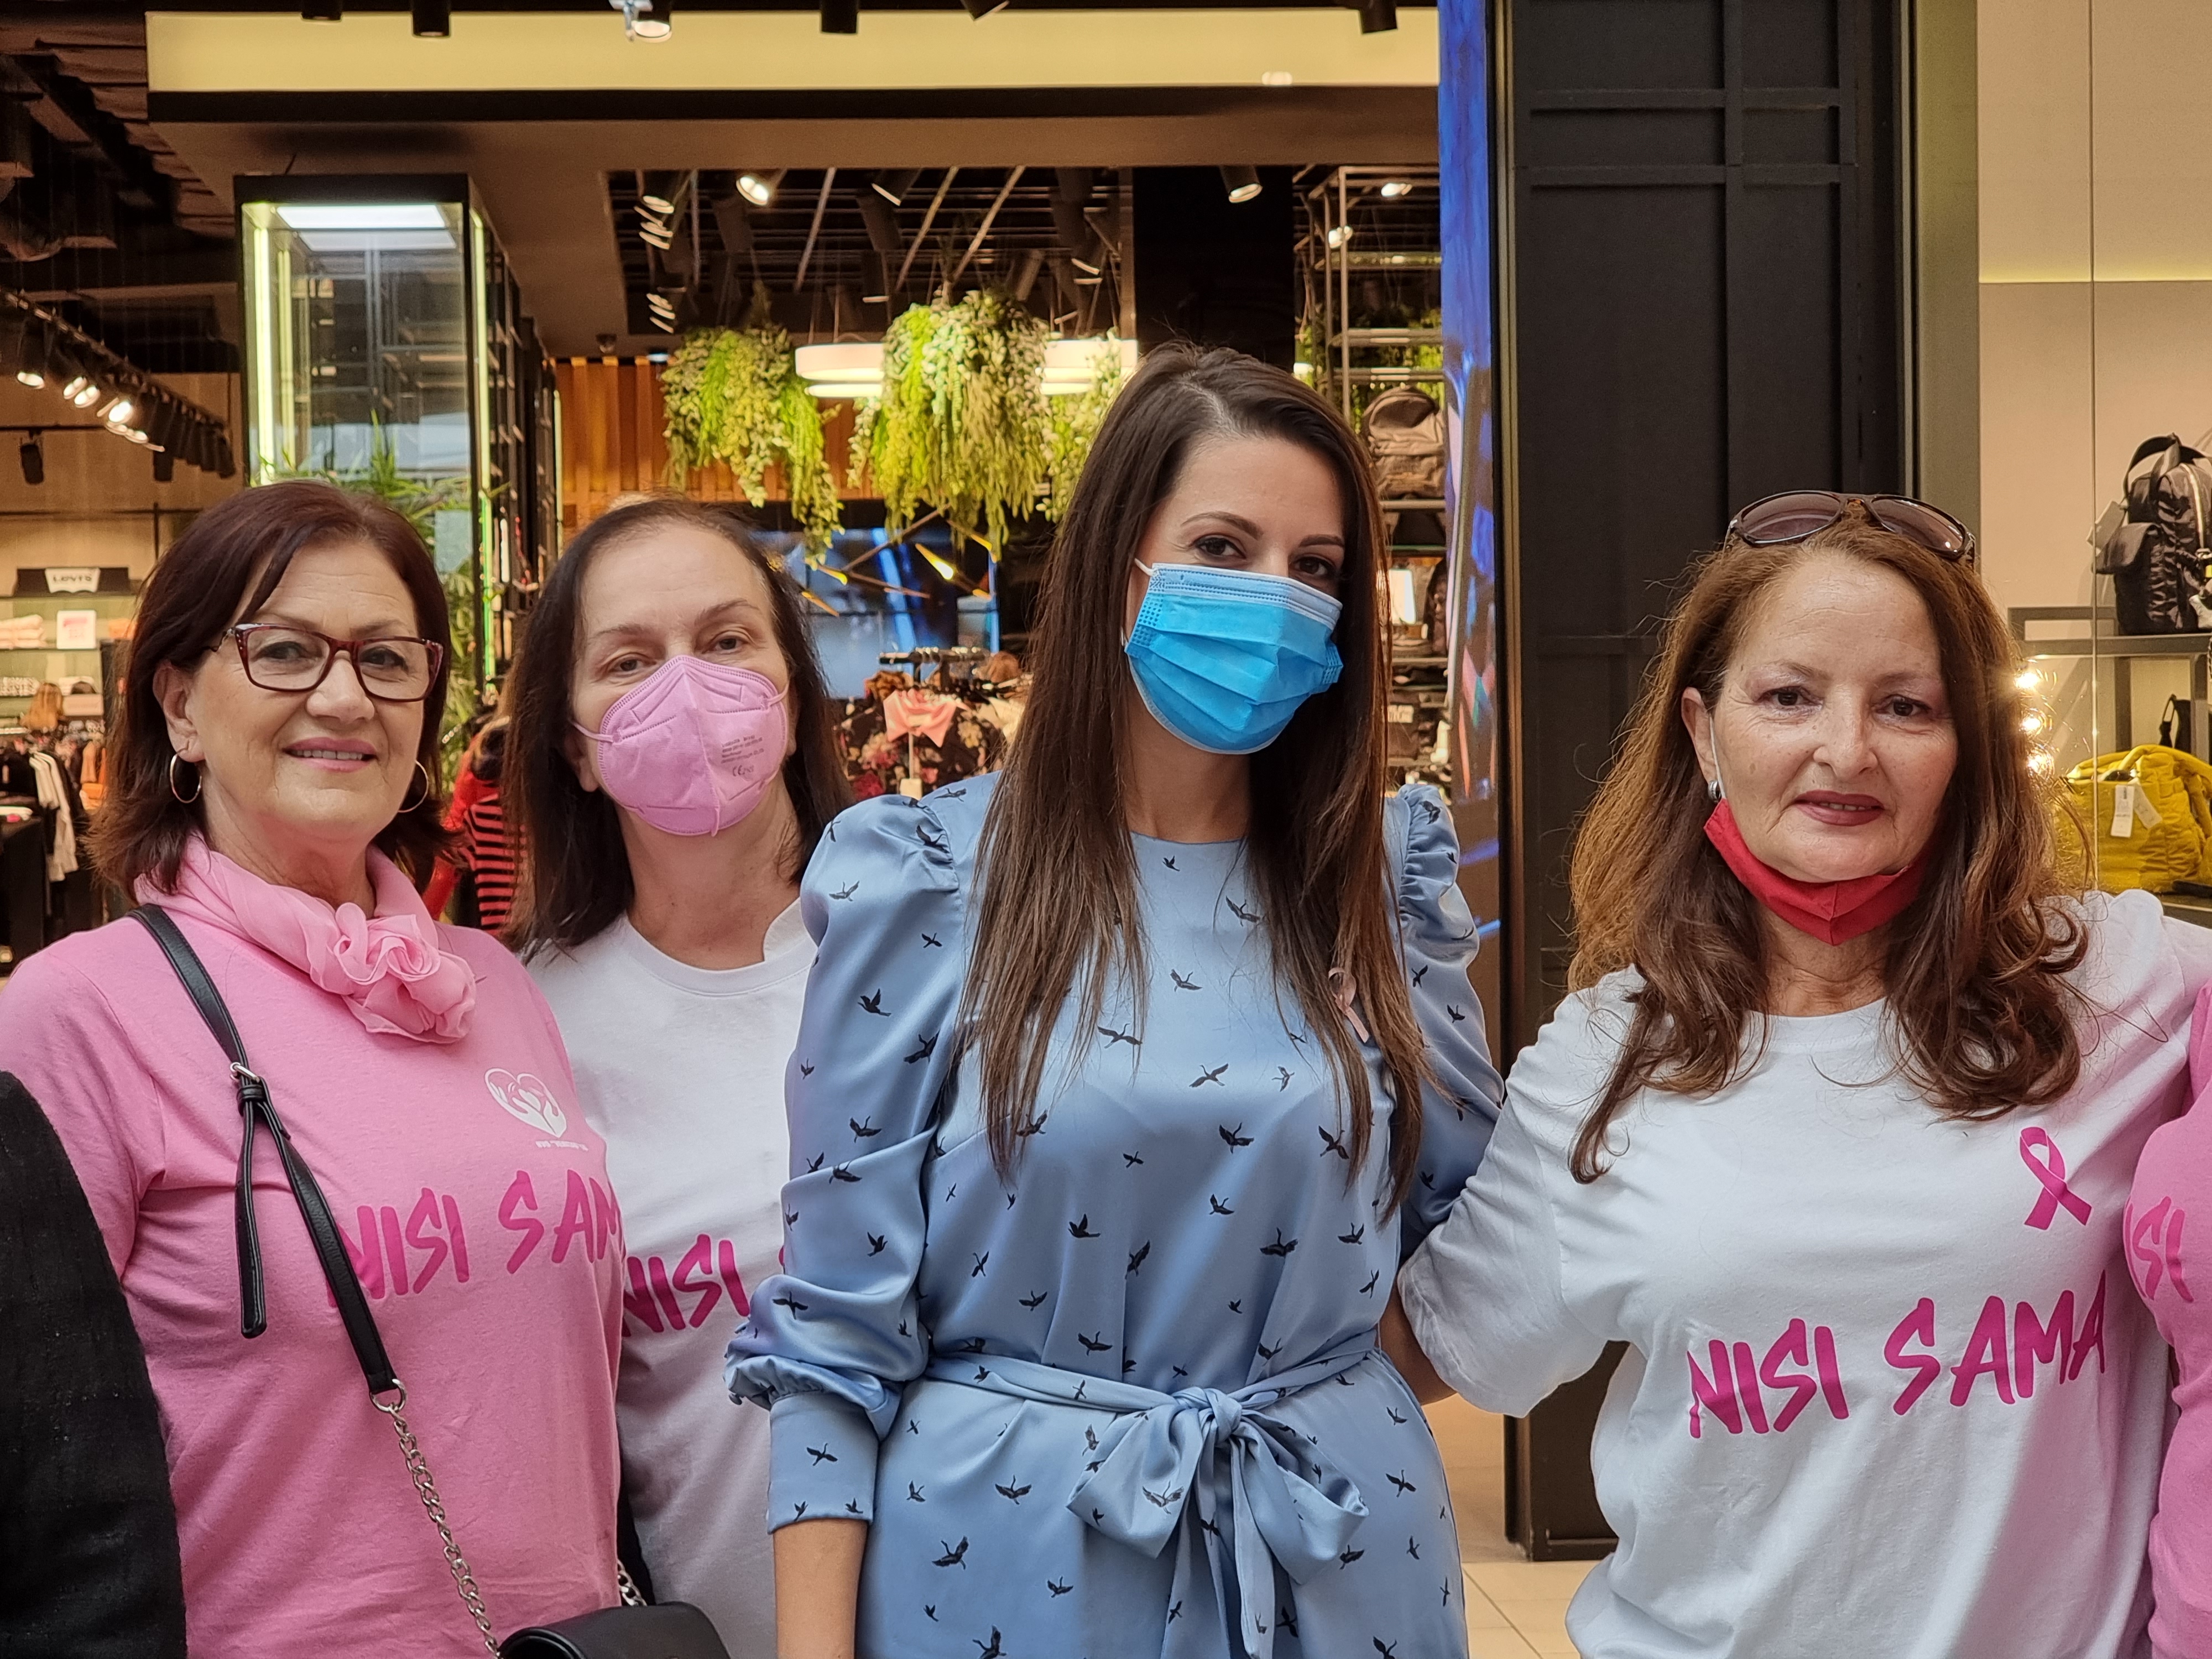 Brojnim aktivnostima i pokretanjem novog socijalnog servisa Glavni grad obilježio mjesec borbe protiv karcinoma dojke; Nisi sama!